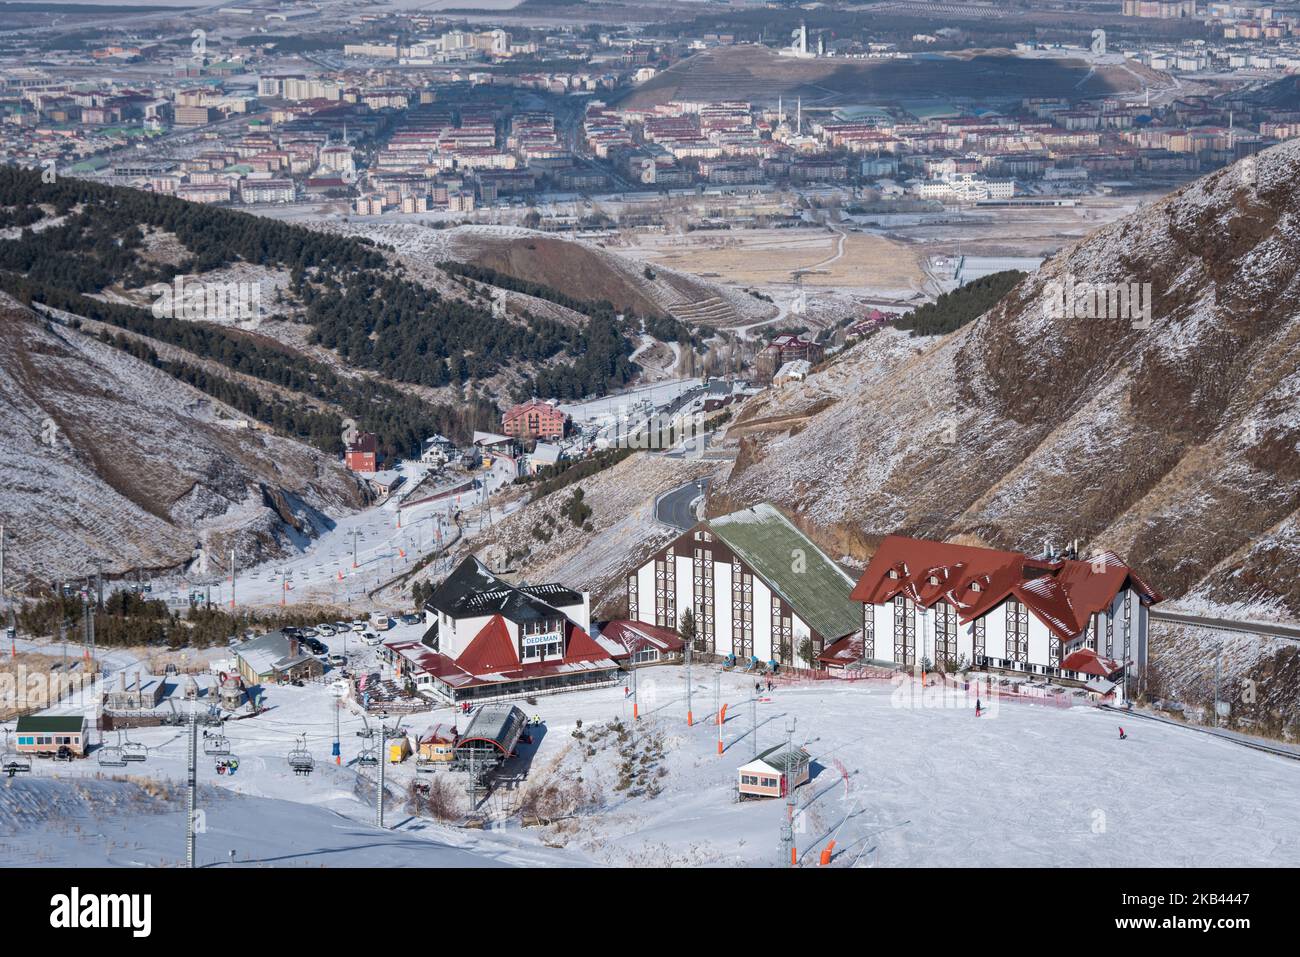 Am 9. Dezember 2018 üben Wintersportler ihre Fähigkeiten in der Nähe der Dedeman Palandoken Ski Lodge im Skigebiet Ejder 3200 Palandoken in den schneebedeckten Bergen südlich von Erzurum, einem beliebten Ski- und Snowboardziel im östlichen Anatolien der Türkei. (Foto von Diego Cupolo/NurPhoto) Stockfoto